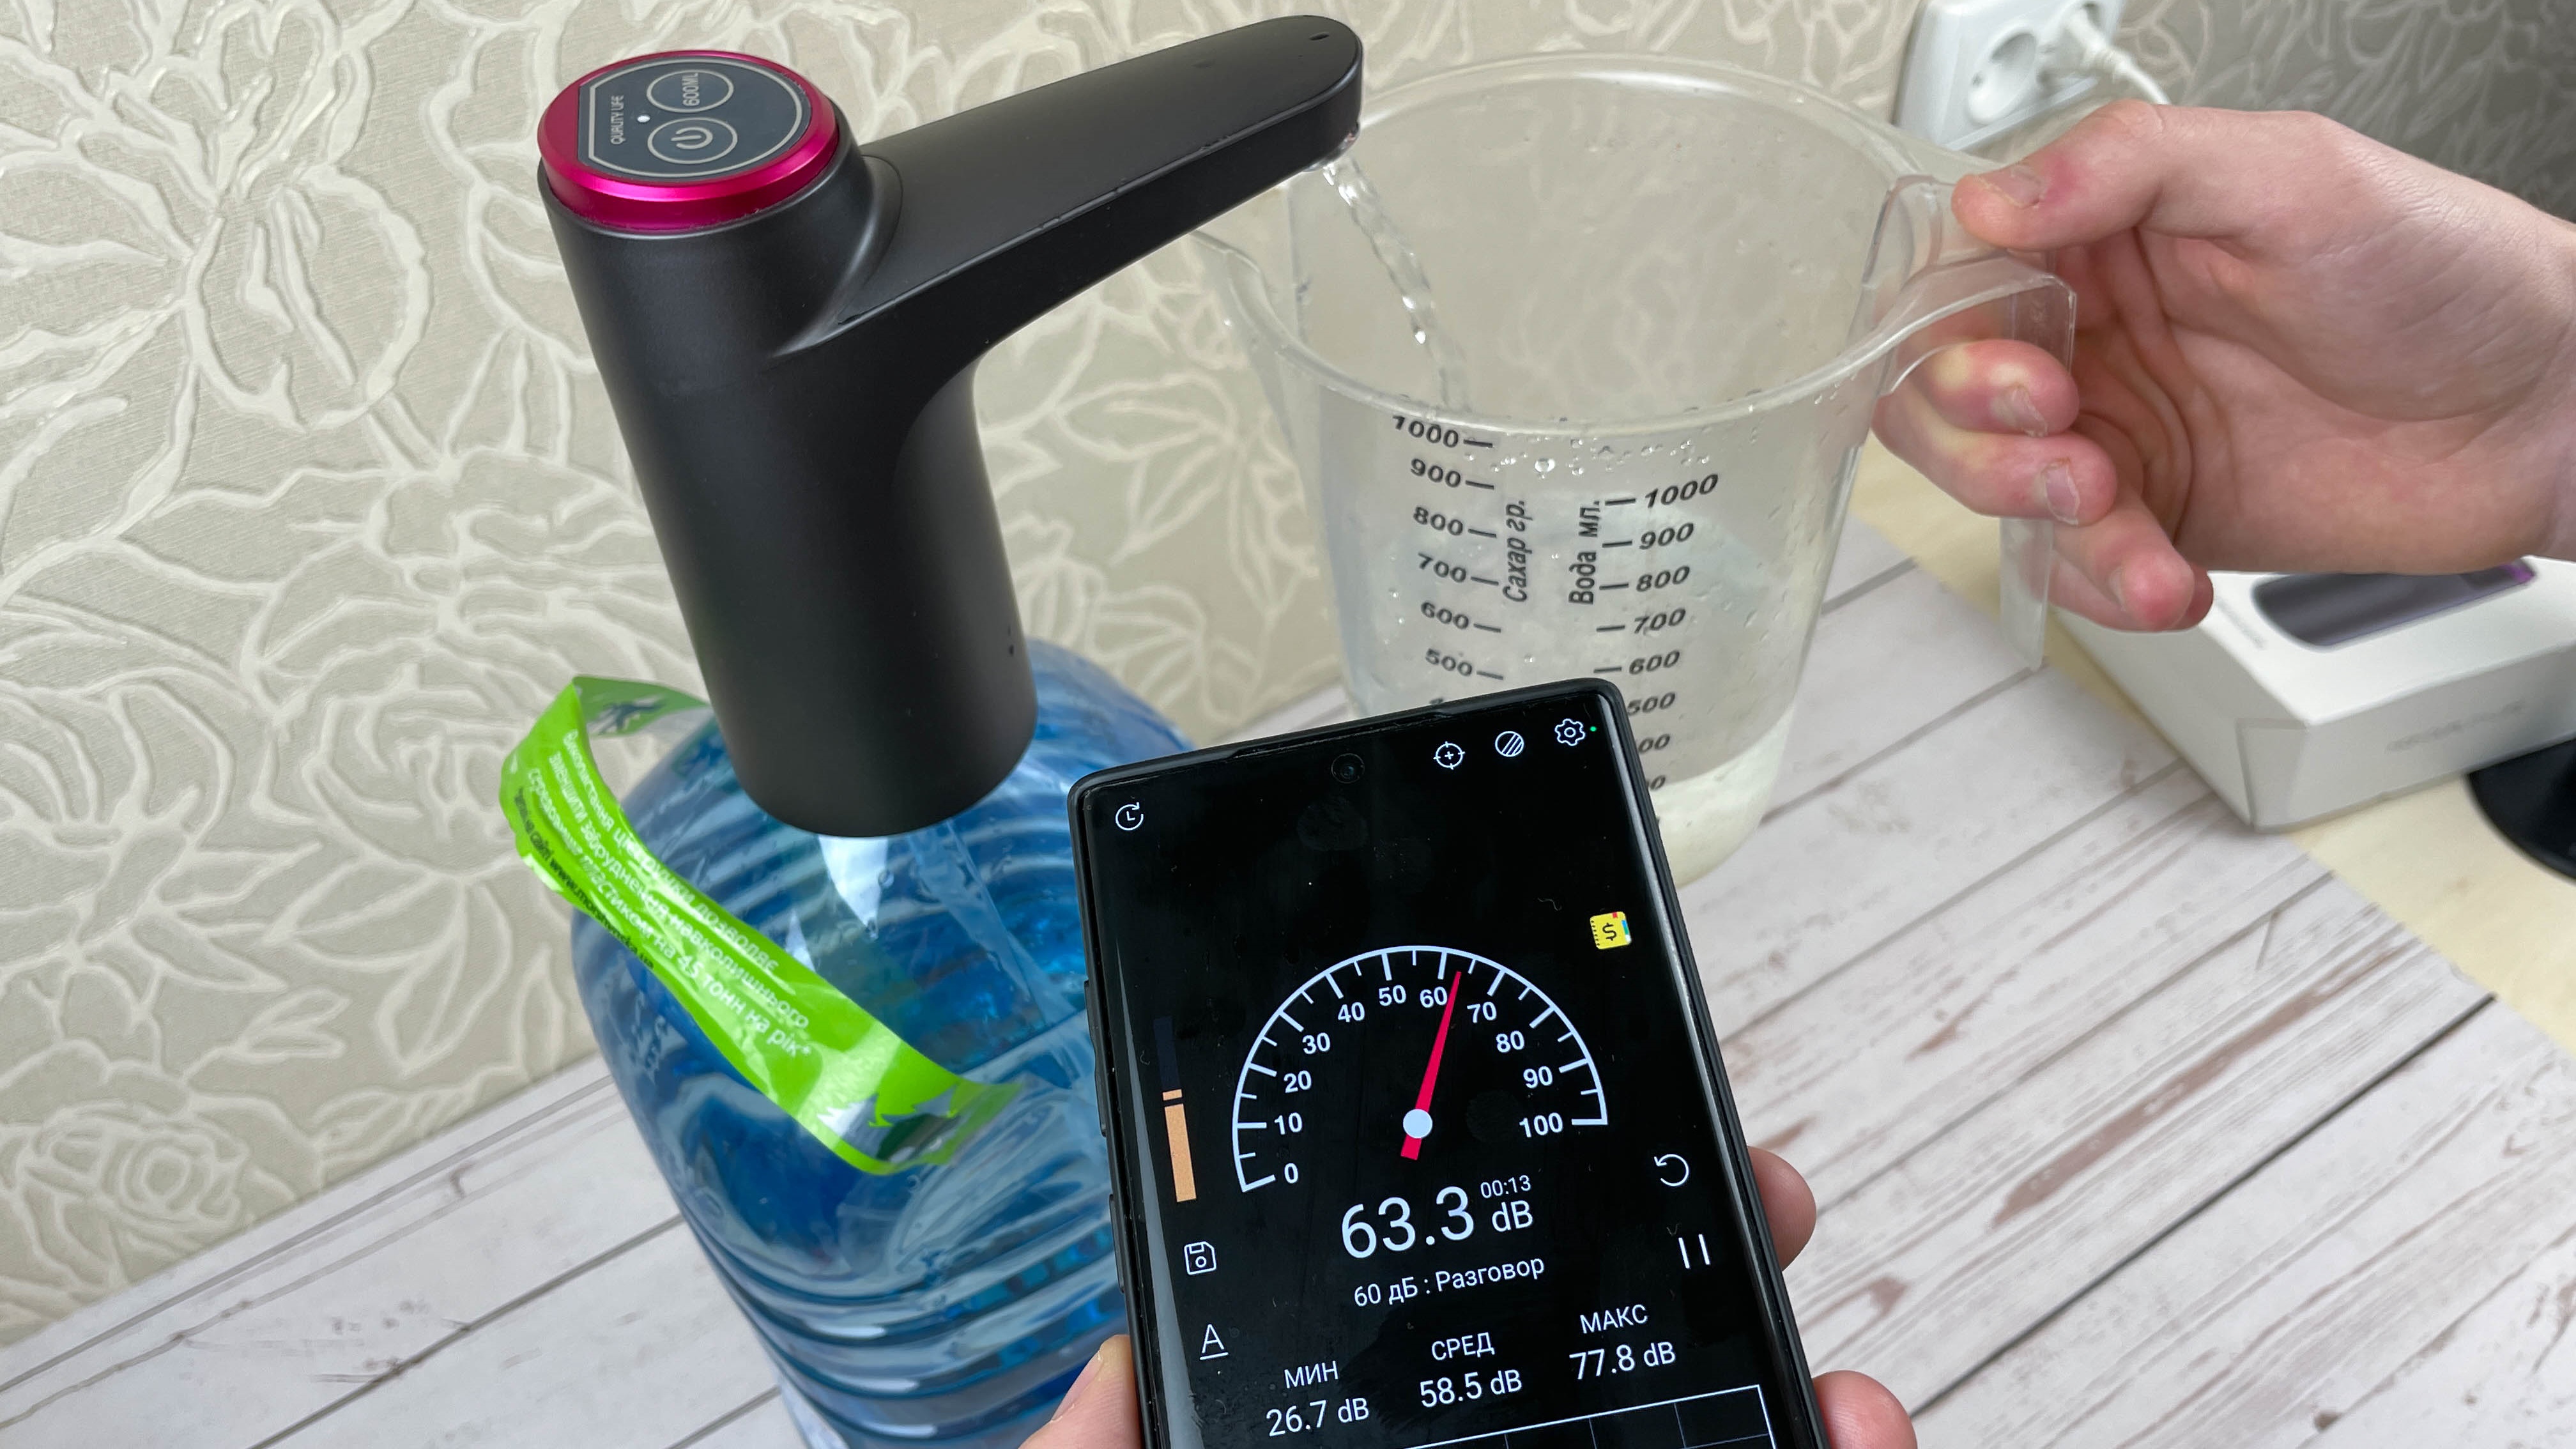 Аккумуляторный насос (помпа) HiPiCok для воды из бутылей: обзор и тесты /  Комфортный дом и бытовая техника / iXBT Live